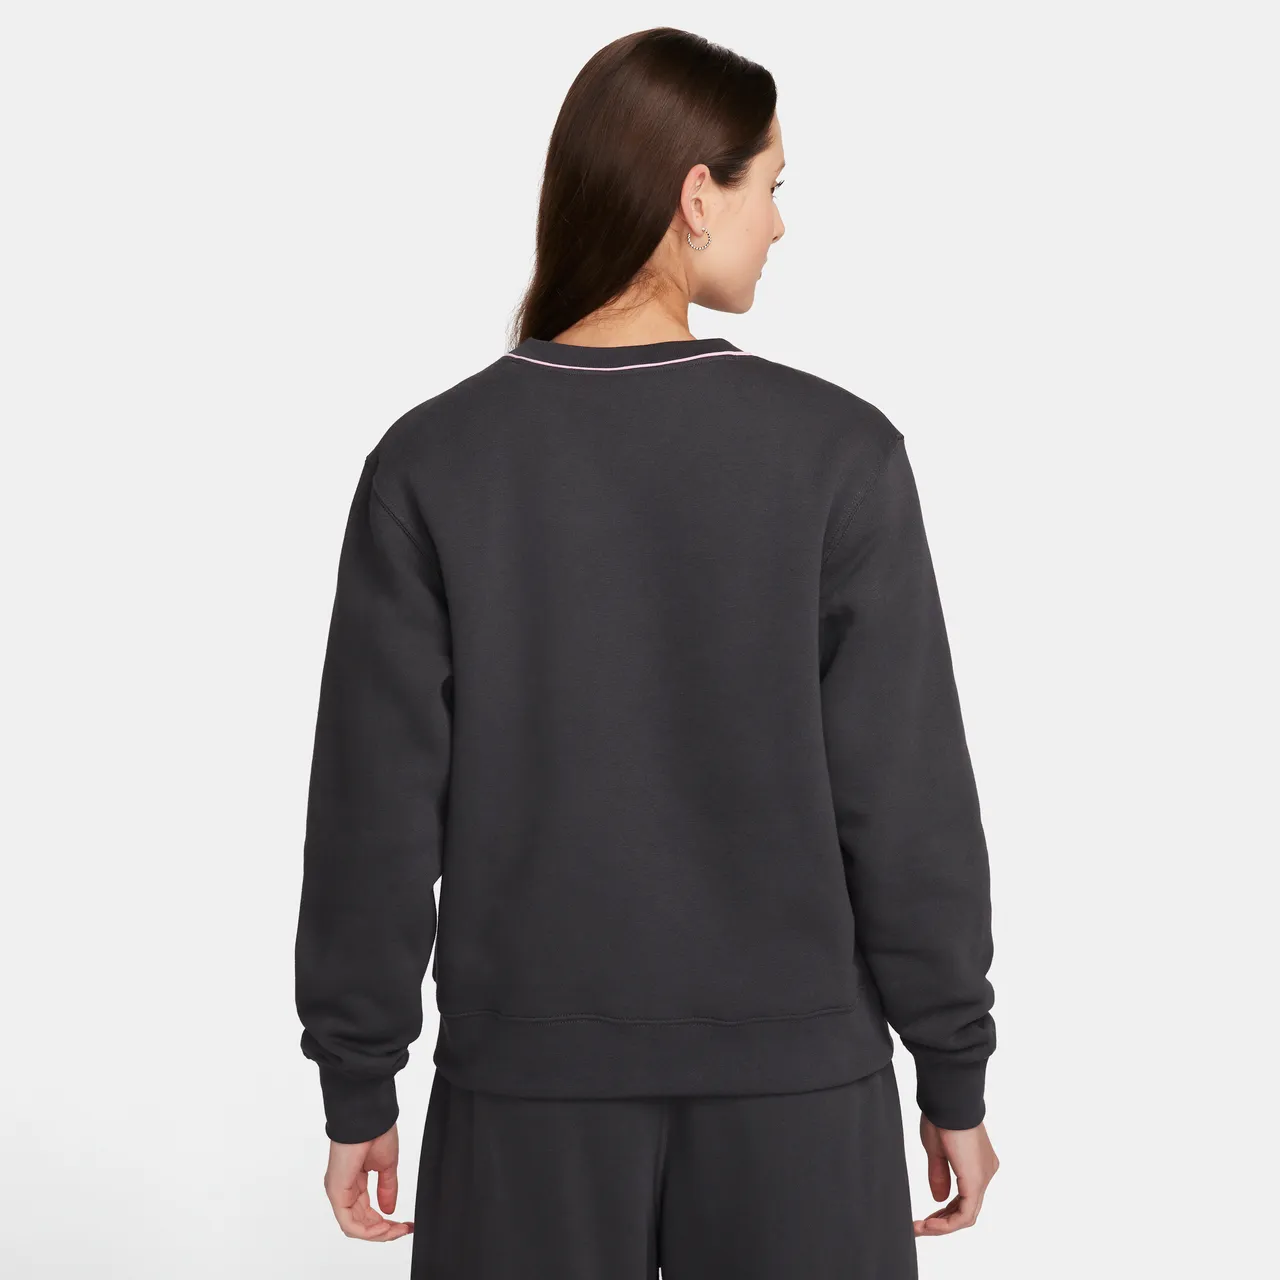 Nike Sportswear sweatshirt van fleece met ronde hals voor dames - Grijs